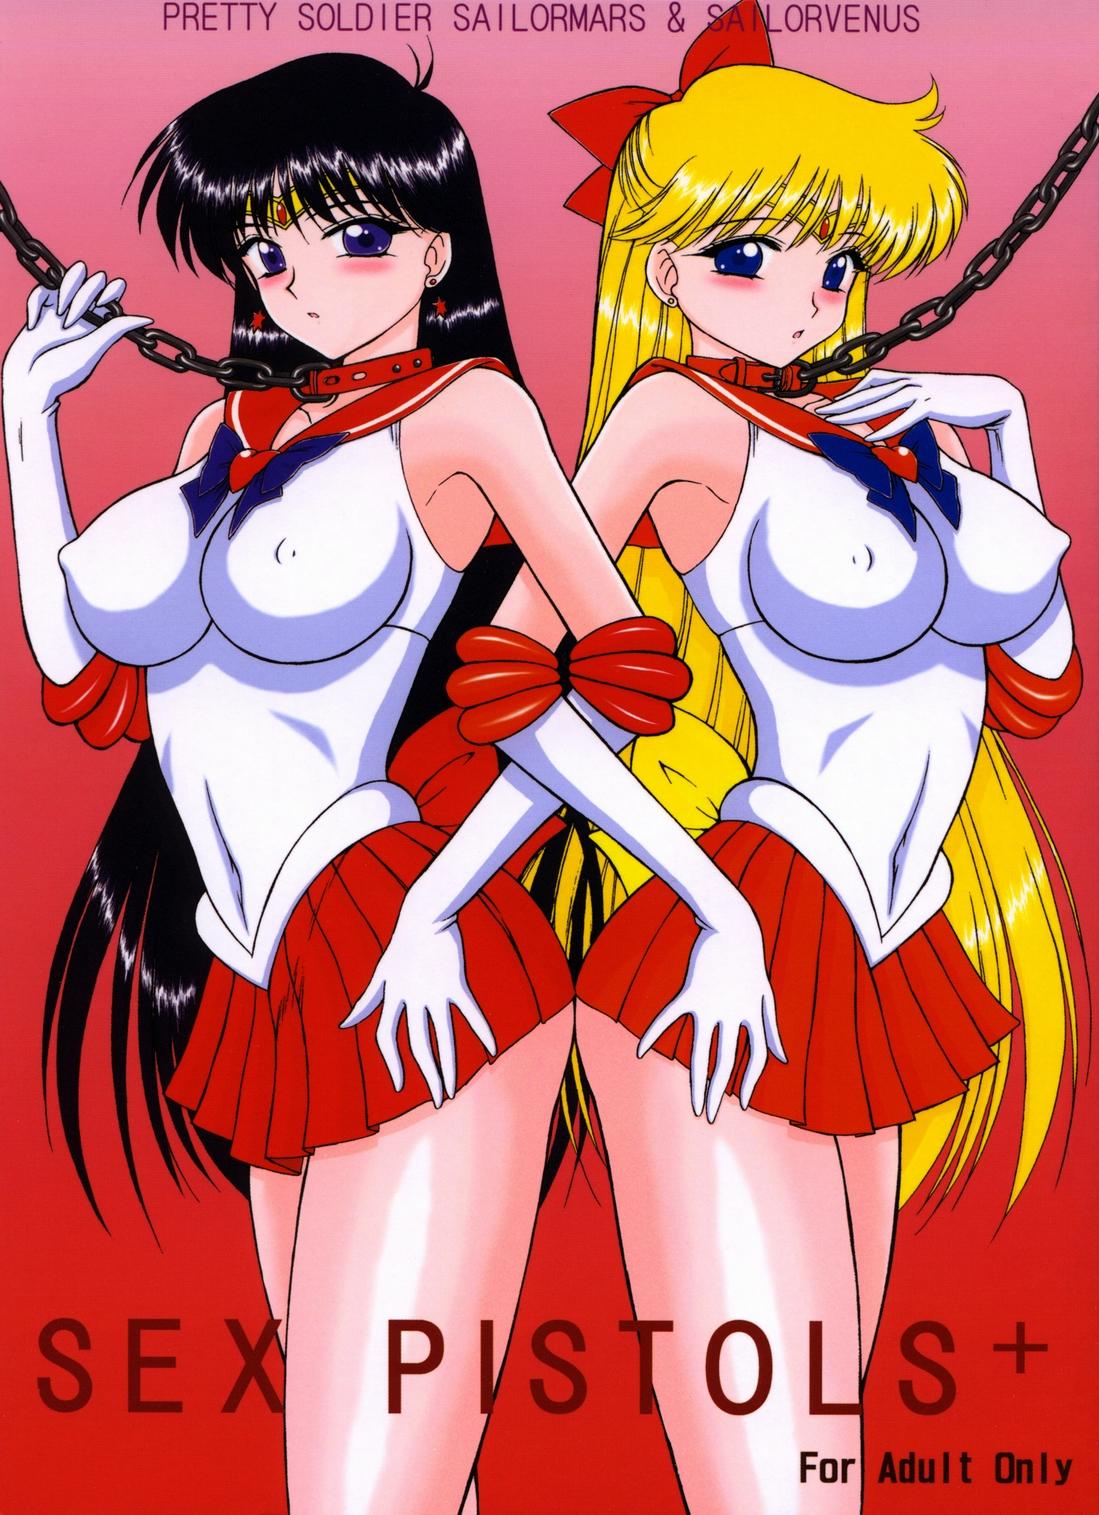 Verification Sex Pistols+ - Sailor moon Doublepenetration - Picture 1